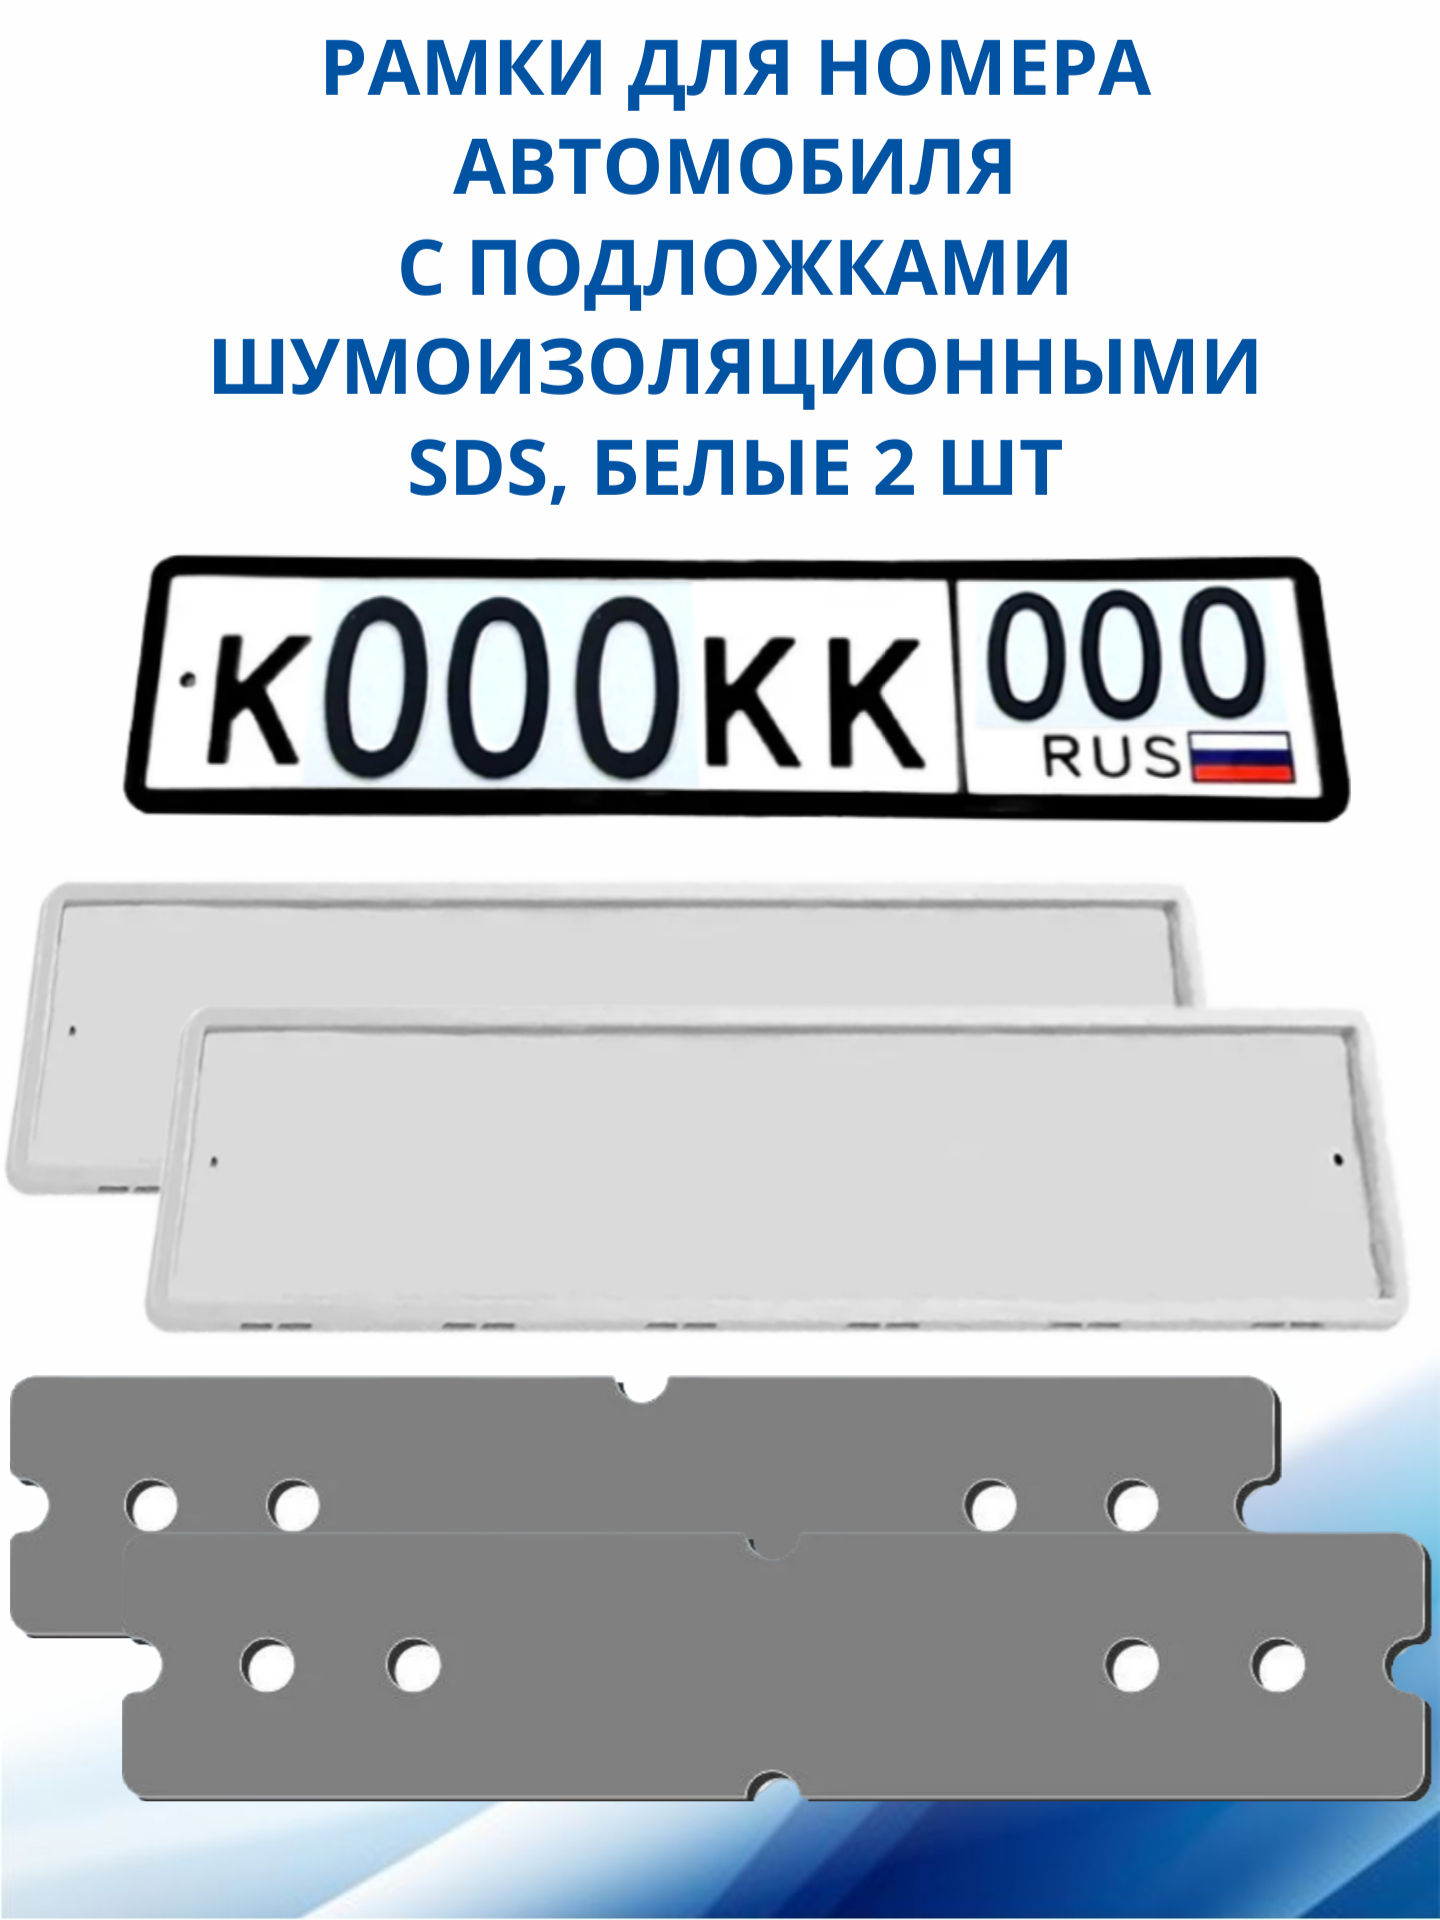 SDS / Рамка для номера автомобиля Белая силикон с подложкой шумоизоляционной 2 шт